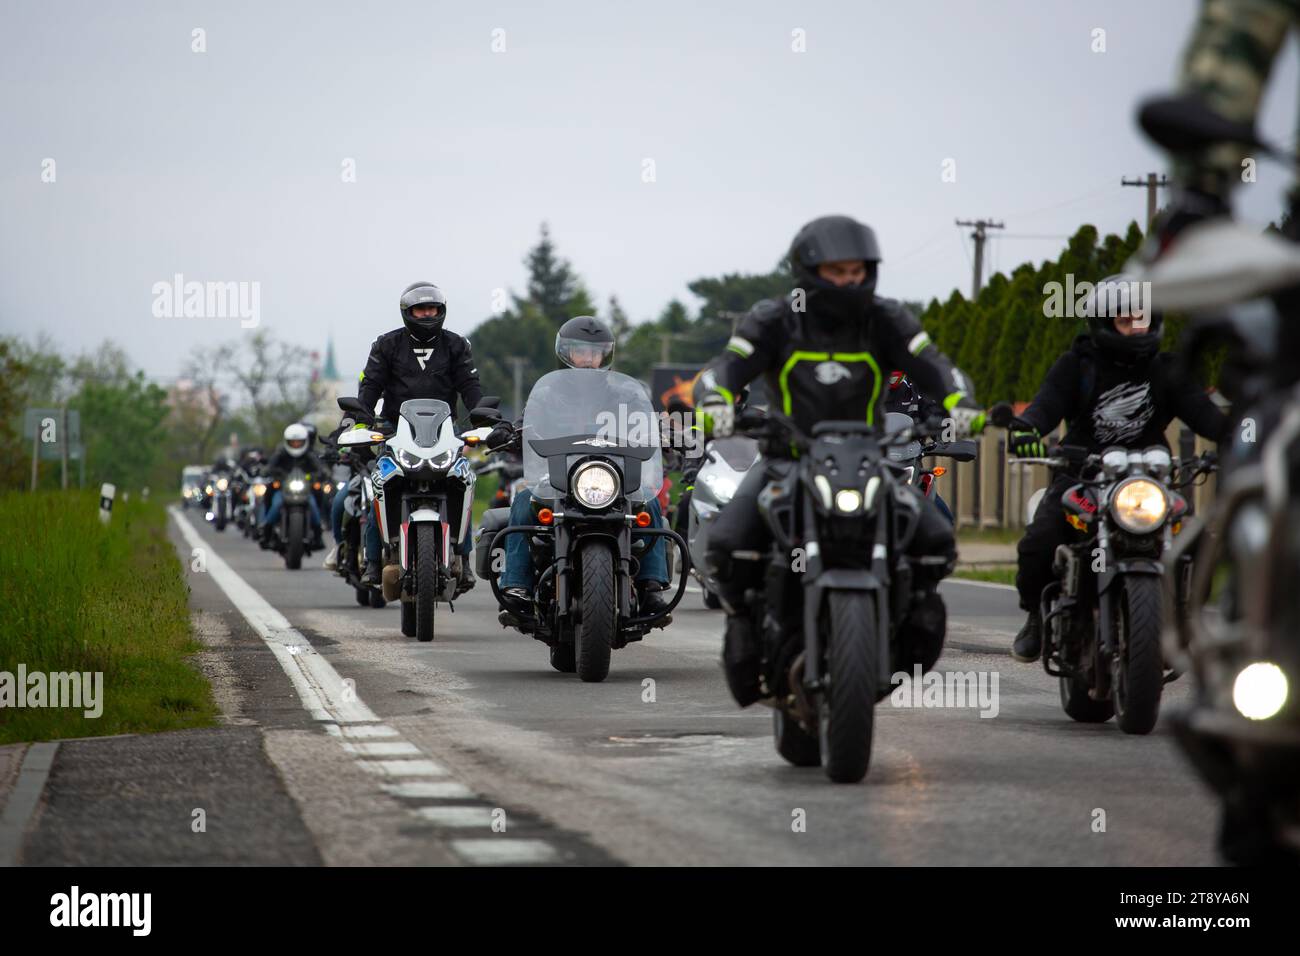 Gruppe von Motorradfahrern, die gemeinsam auf öffentlichen Straßen fahren Stockfoto